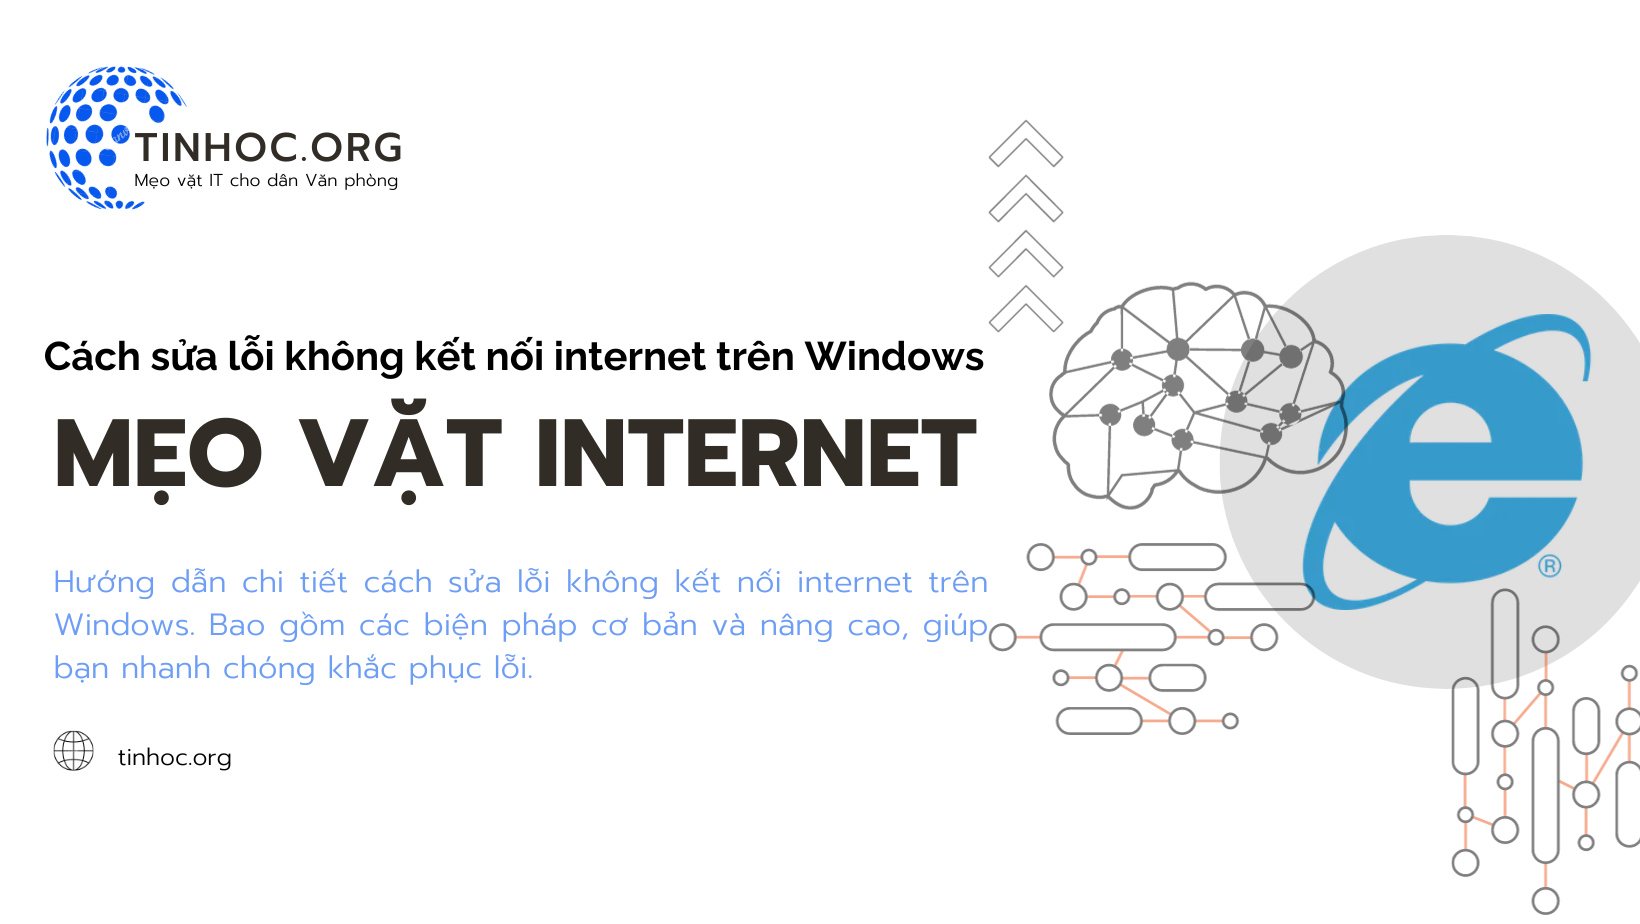 Cách sửa lỗi không kết nối internet trên Windows